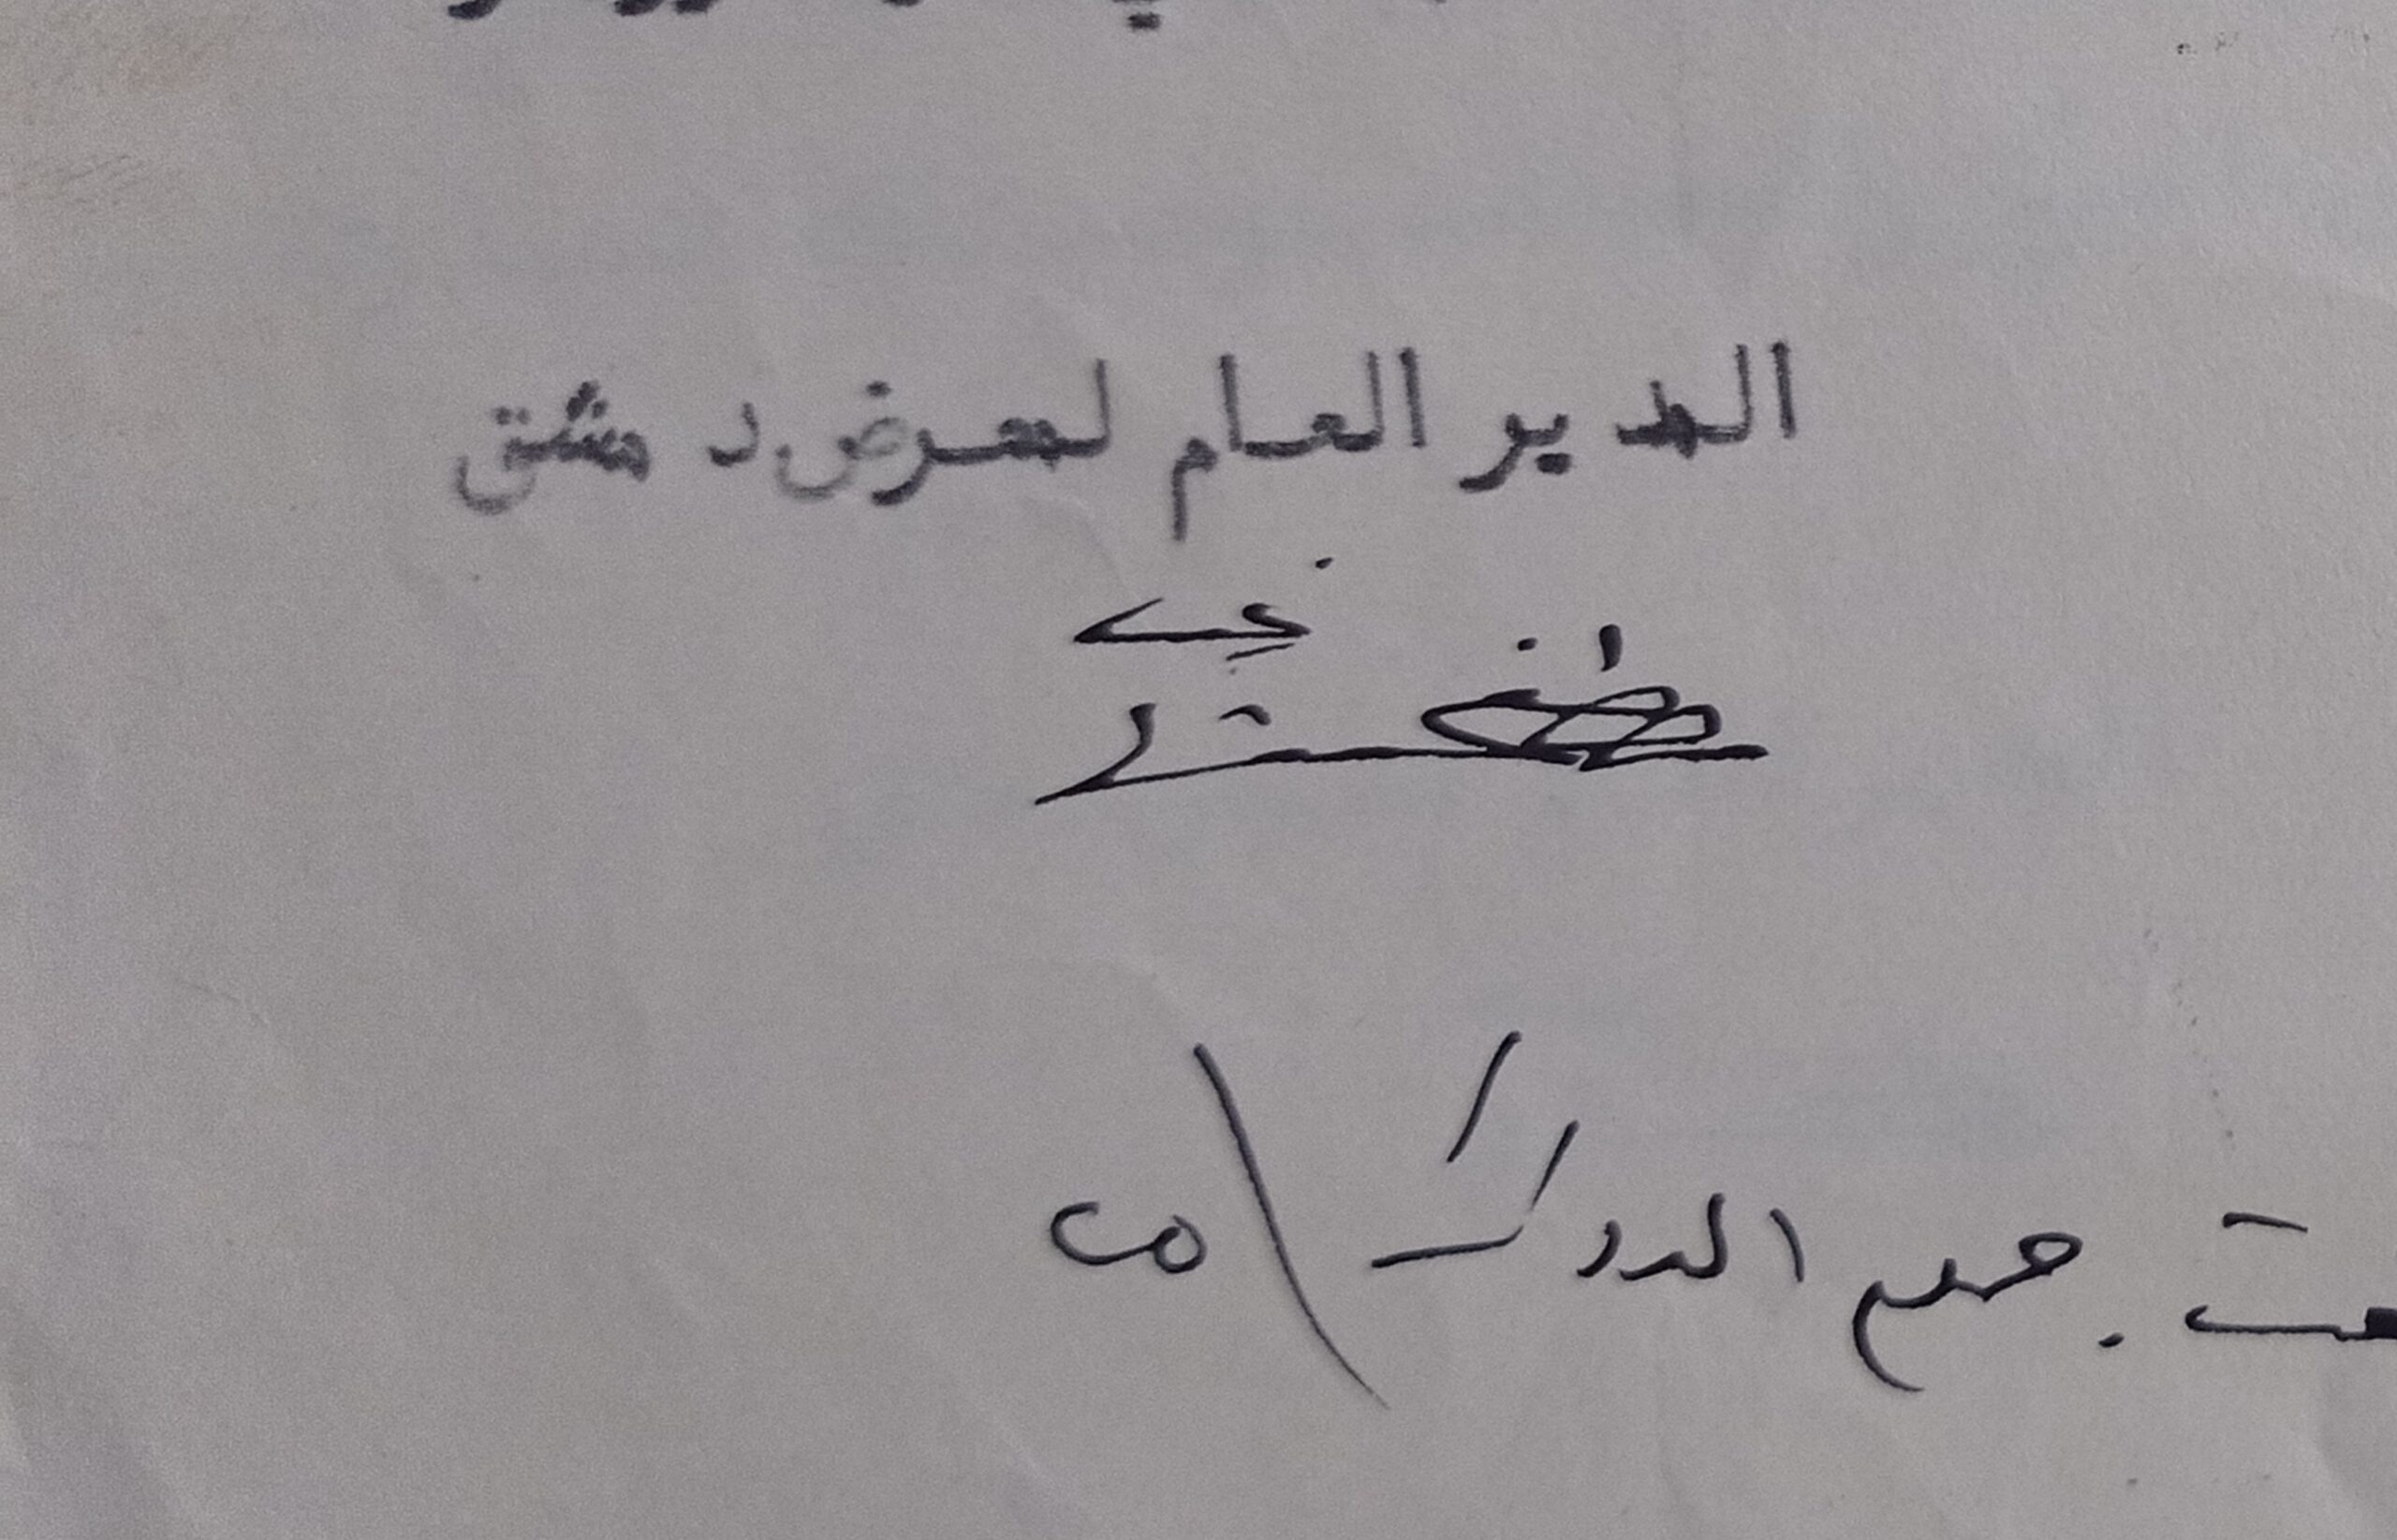 التاريخ السوري المعاصر - توقيع الأمير مصفى الشهابي المدير العام لمعرض دمشق 1936